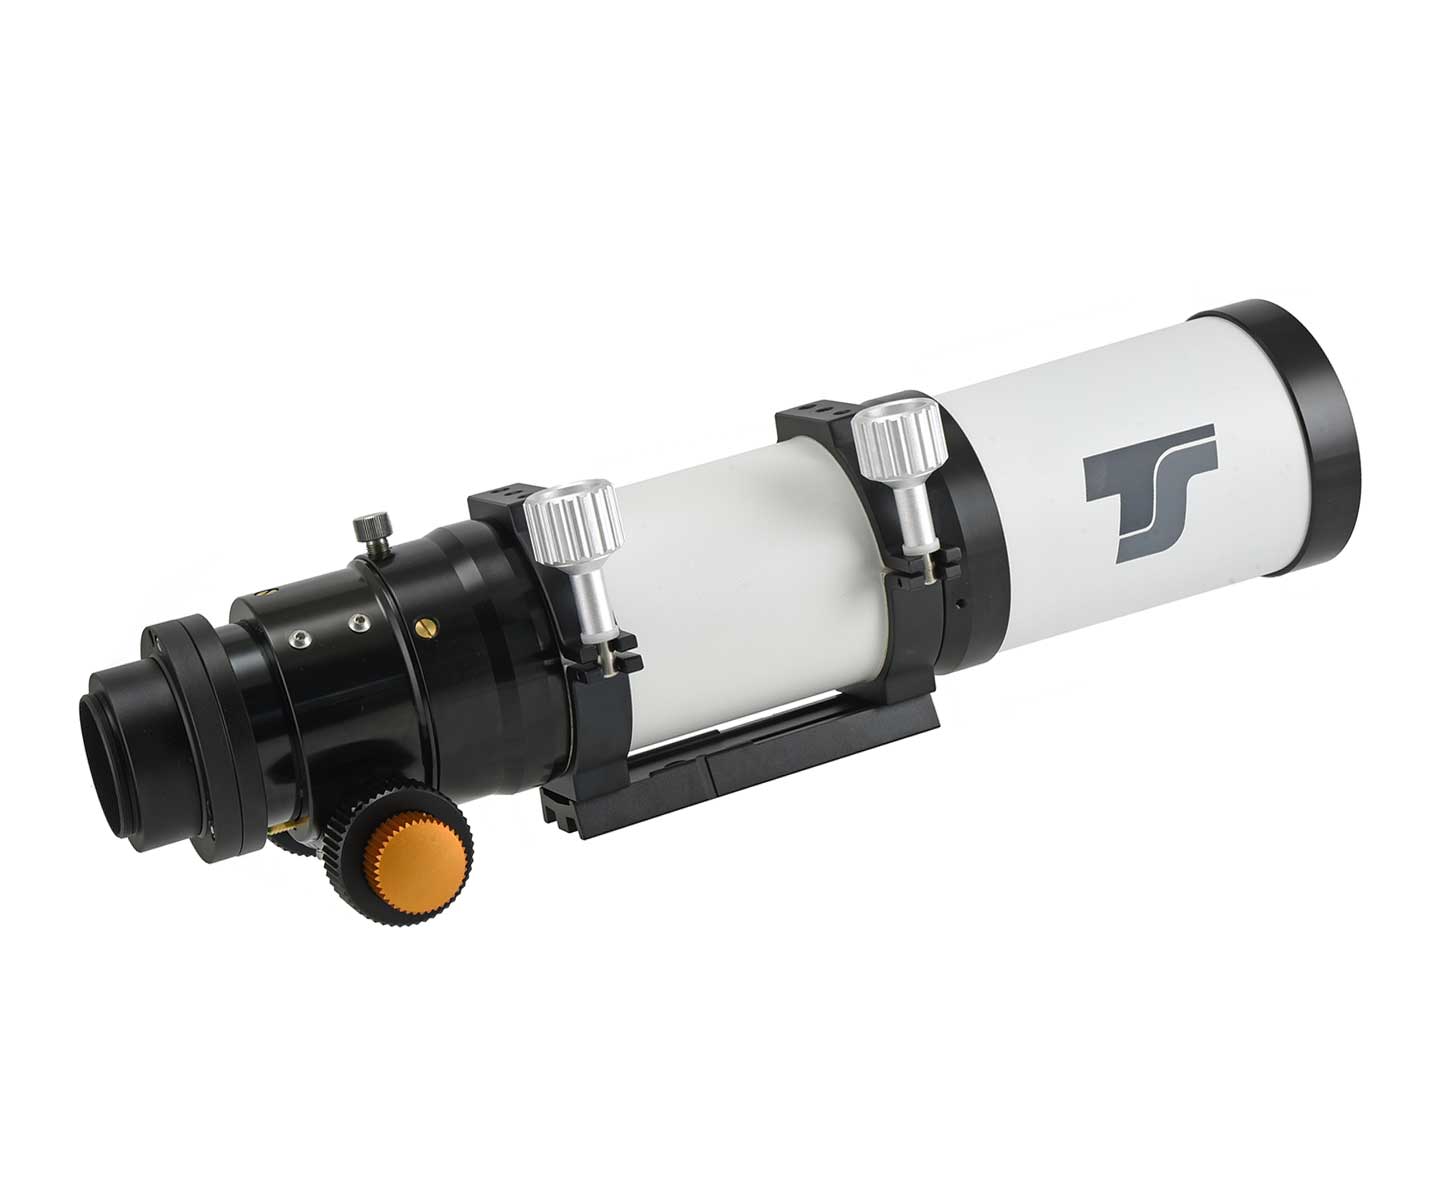  Astrografo StarAPO TS 80mm f/4.4 - apertura di 80mm e lunghezza focale di 352mm 